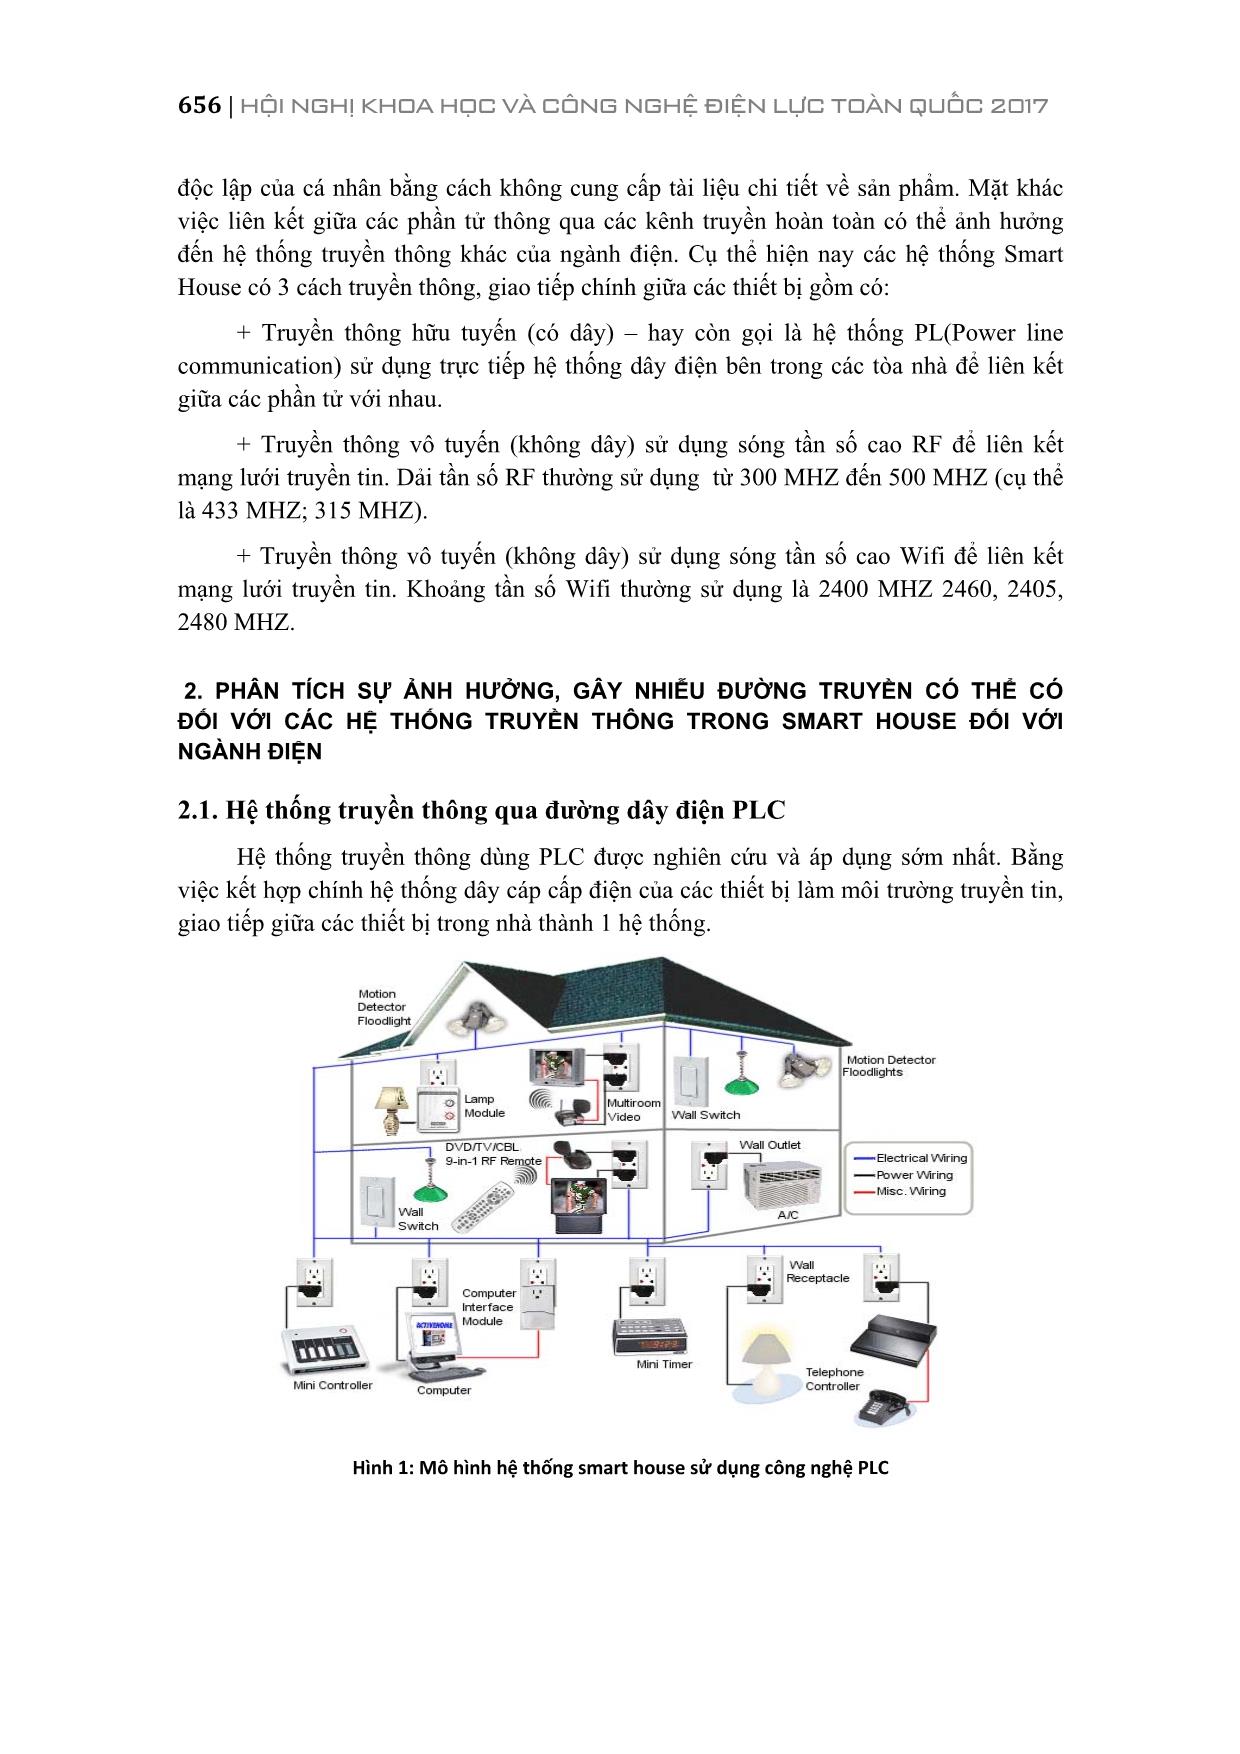 Truyền thông trong smart house và tác động với hệ thống điện Việt Nam trang 2